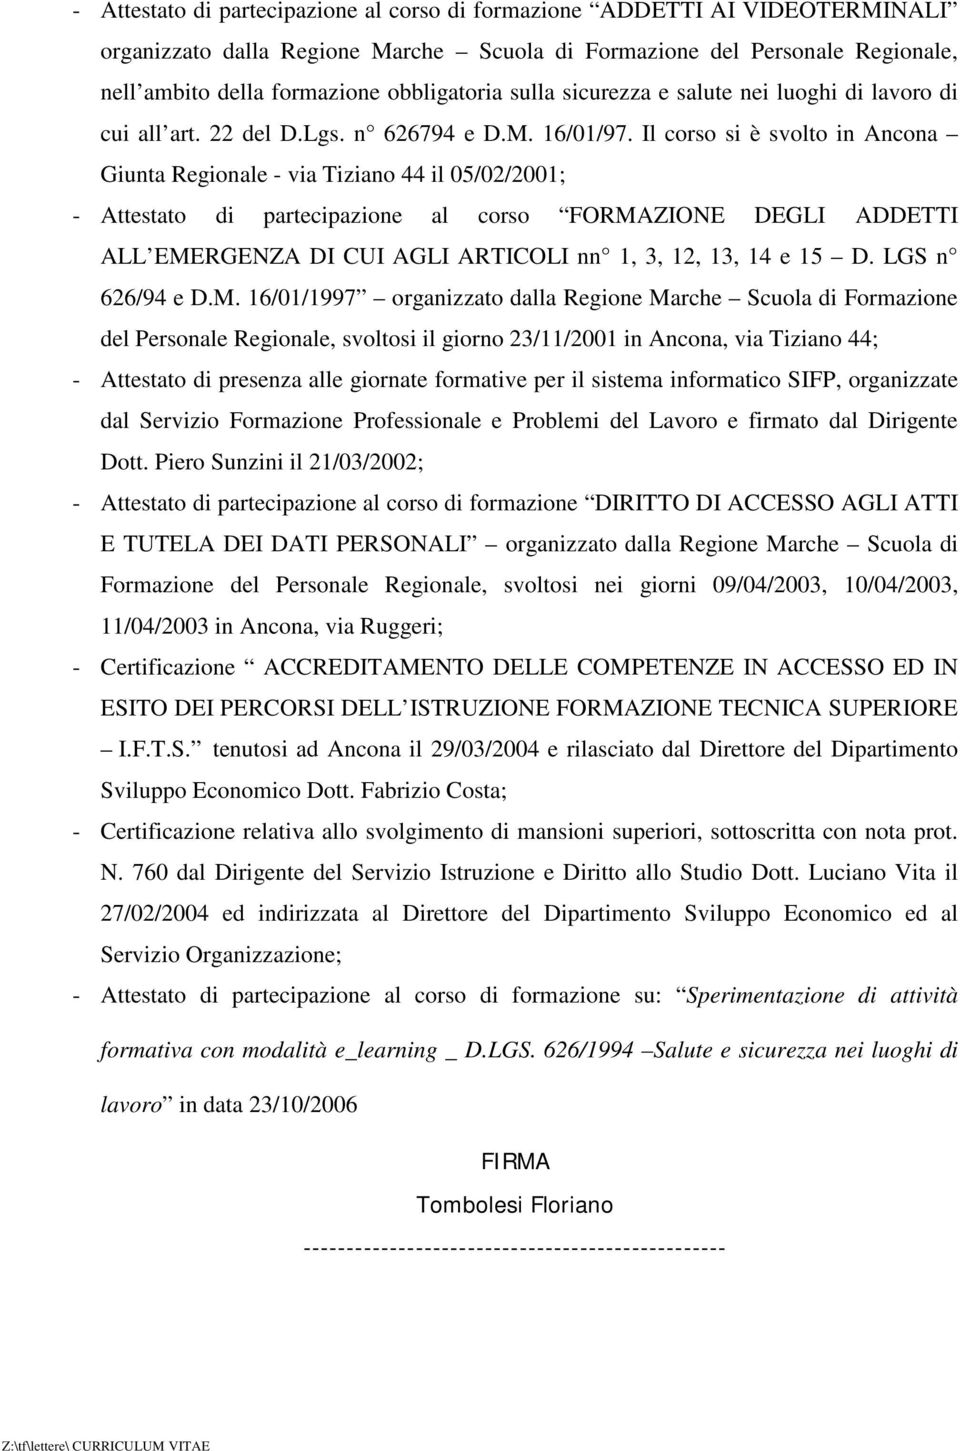 Il corso si è svolto in Ancona Giunta Regionale - via Tiziano 44 il 05/02/2001; - Attestato di partecipazione al corso FORMAZIONE DEGLI ADDETTI ALL EMERGENZA DI CUI AGLI ARTICOLI nn 1, 3, 12, 13, 14